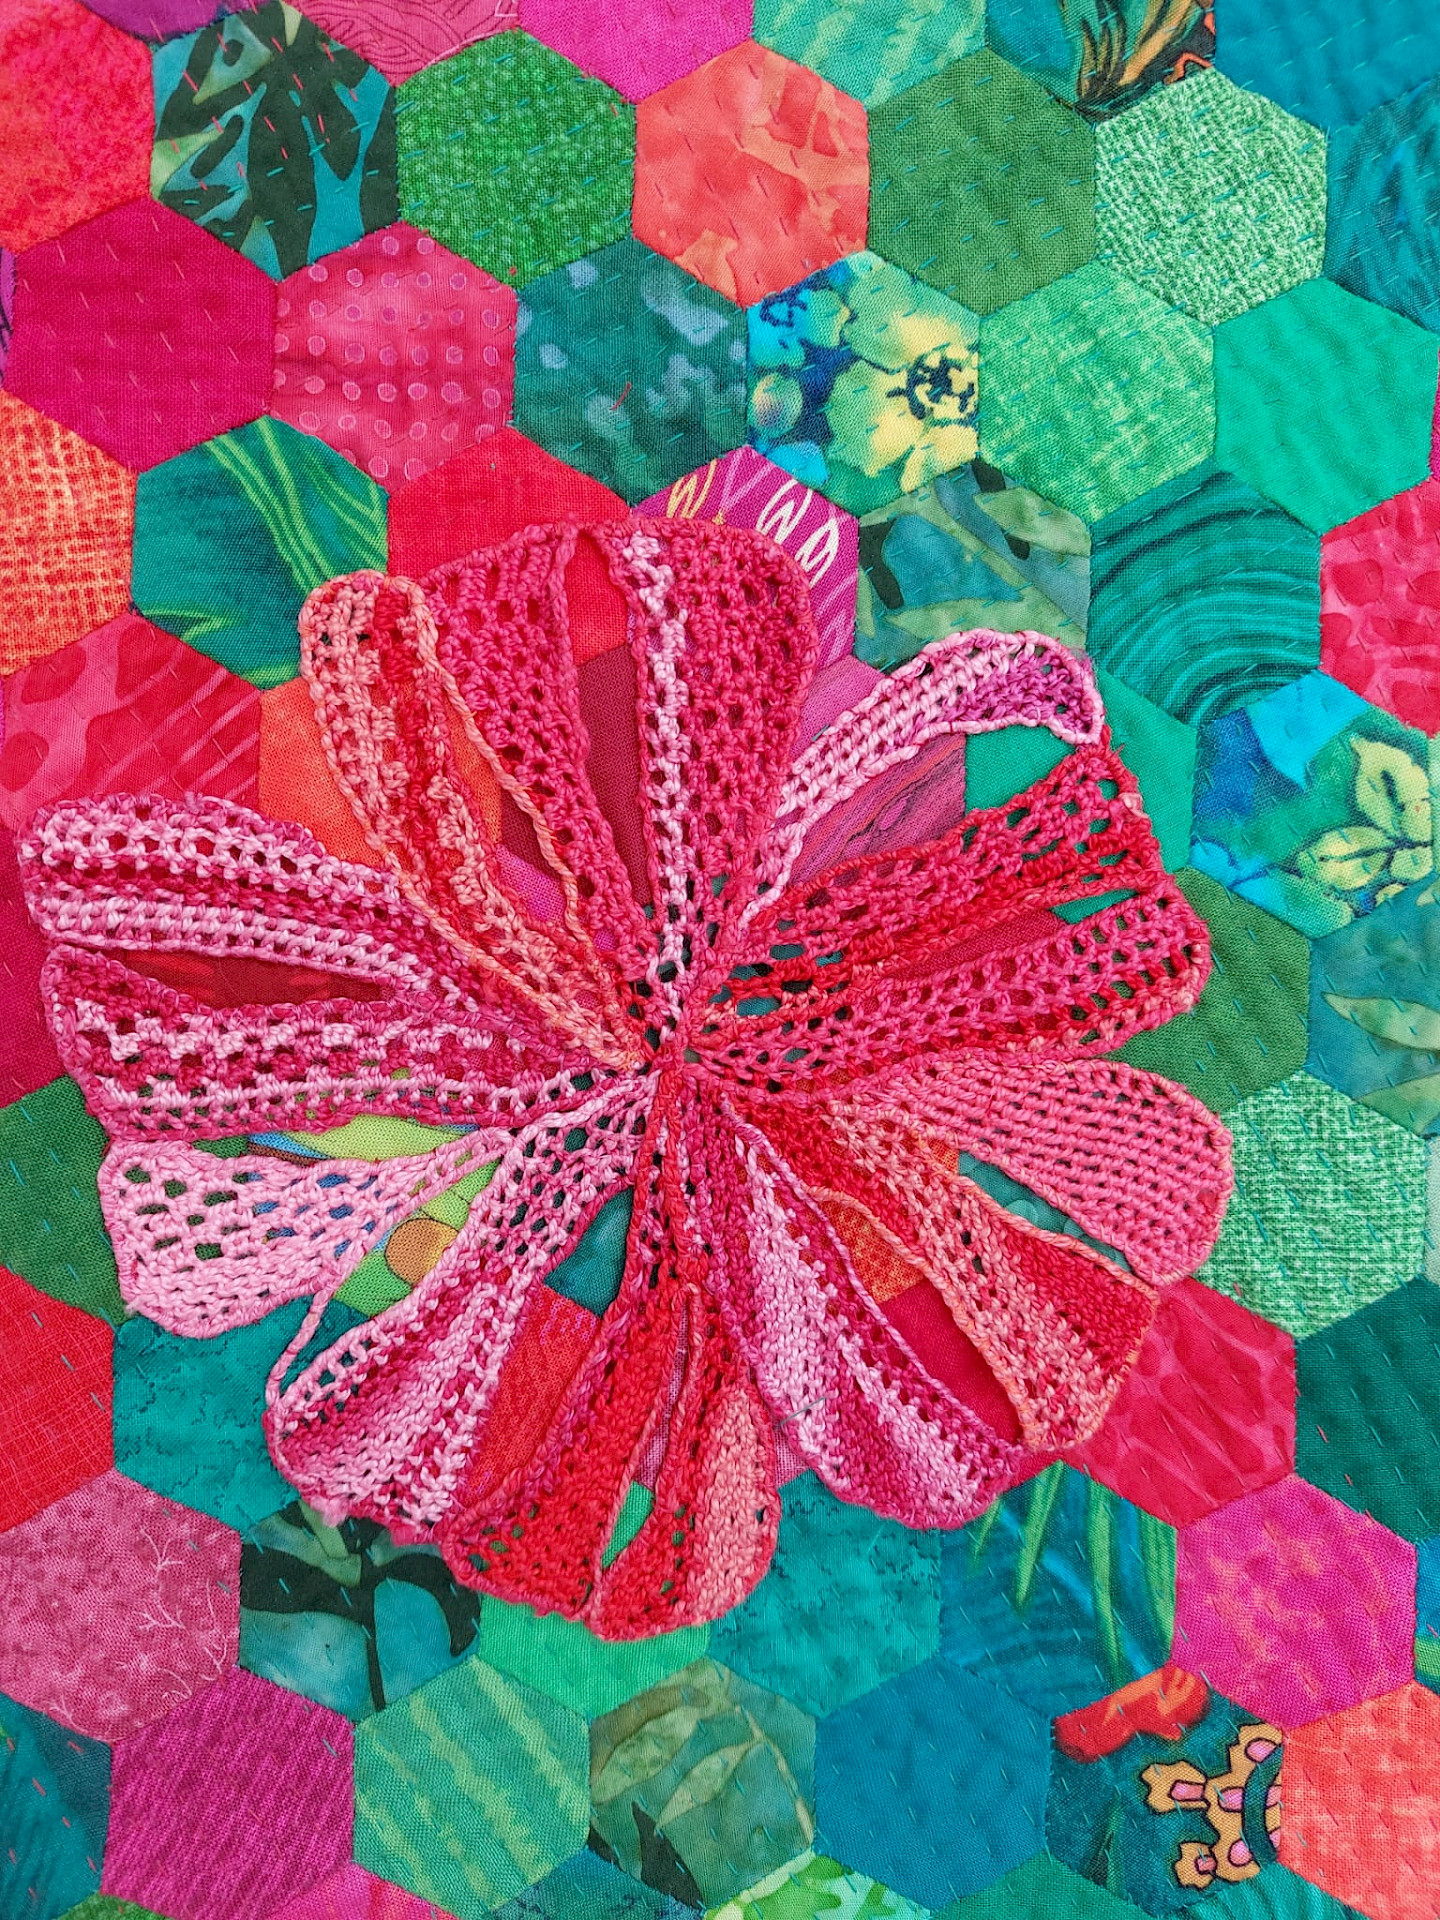 Sigrid Tannert: Needlepoint appliqué on a hand-sewn hexagon quilt